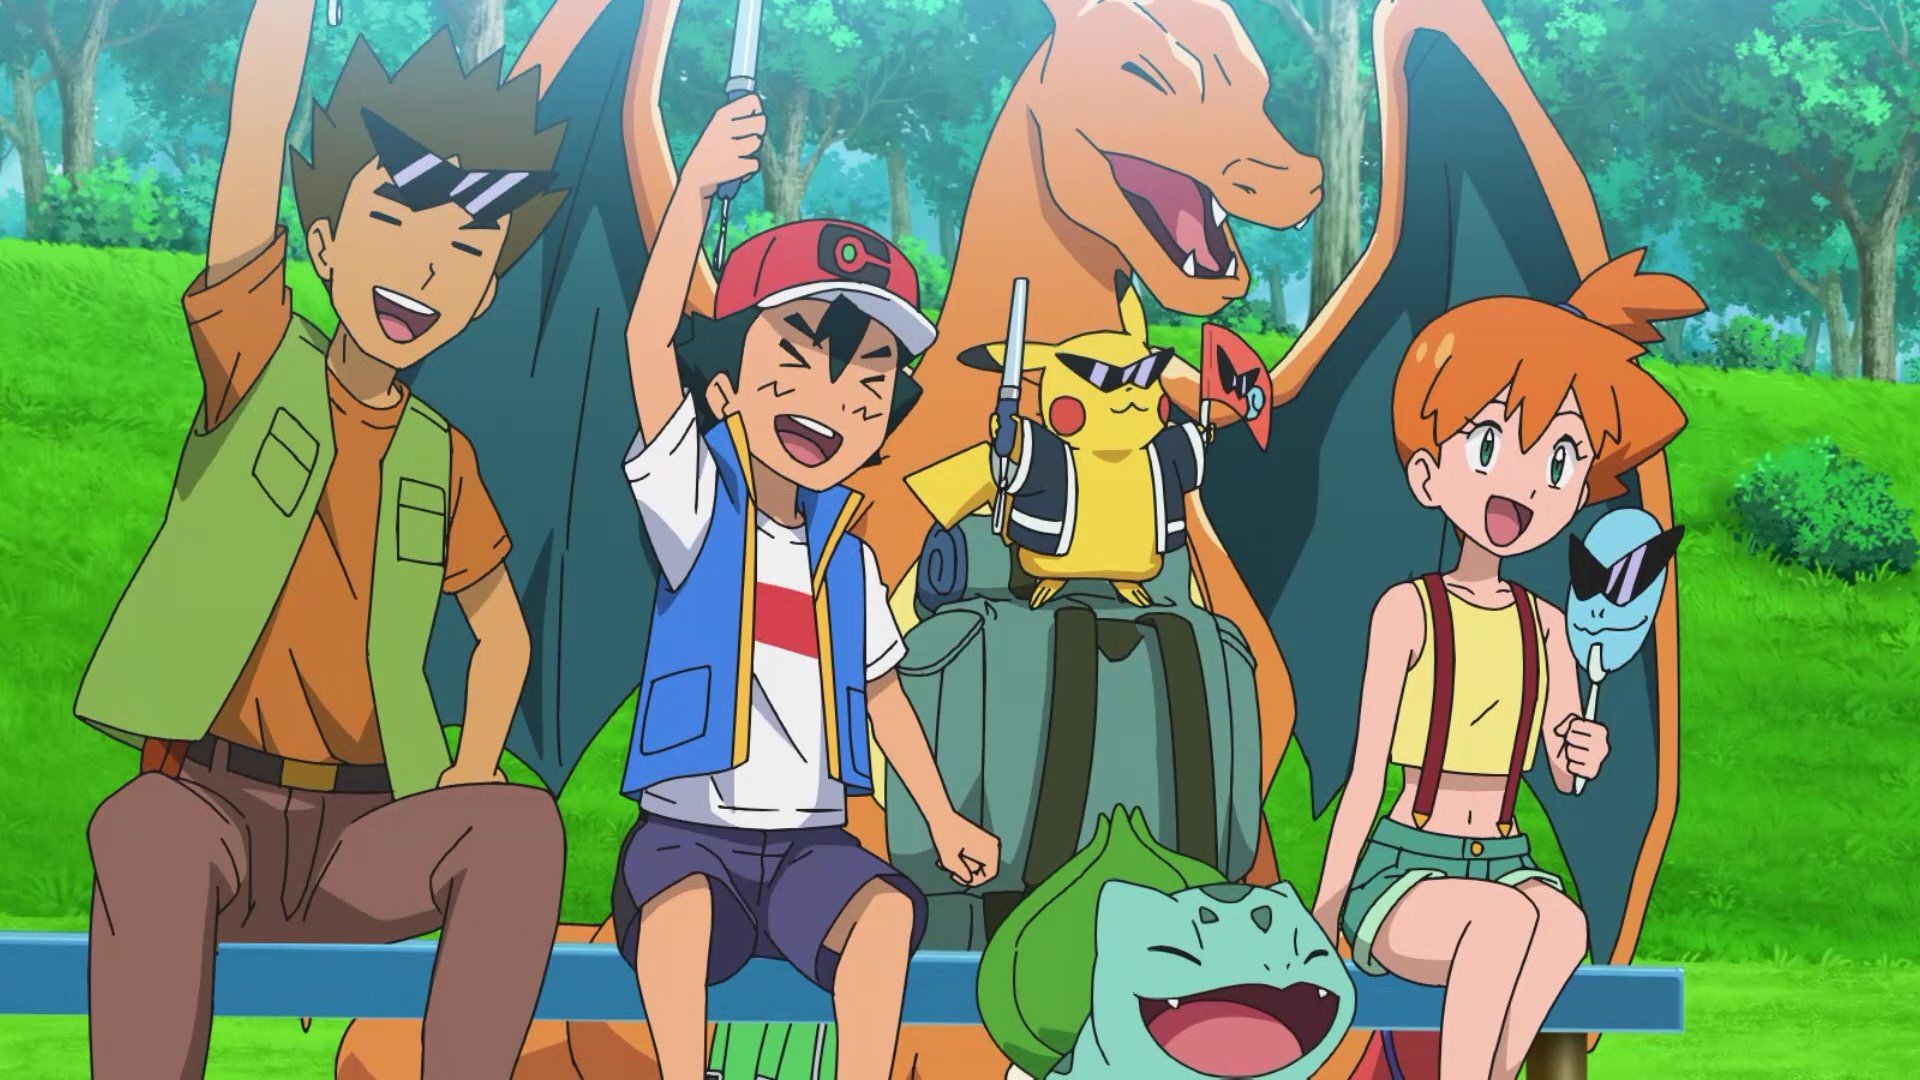 Pokémon 20: Sol & Lua – Dublado Todos os Episódios - Anime HD - Animes  Online Gratis!